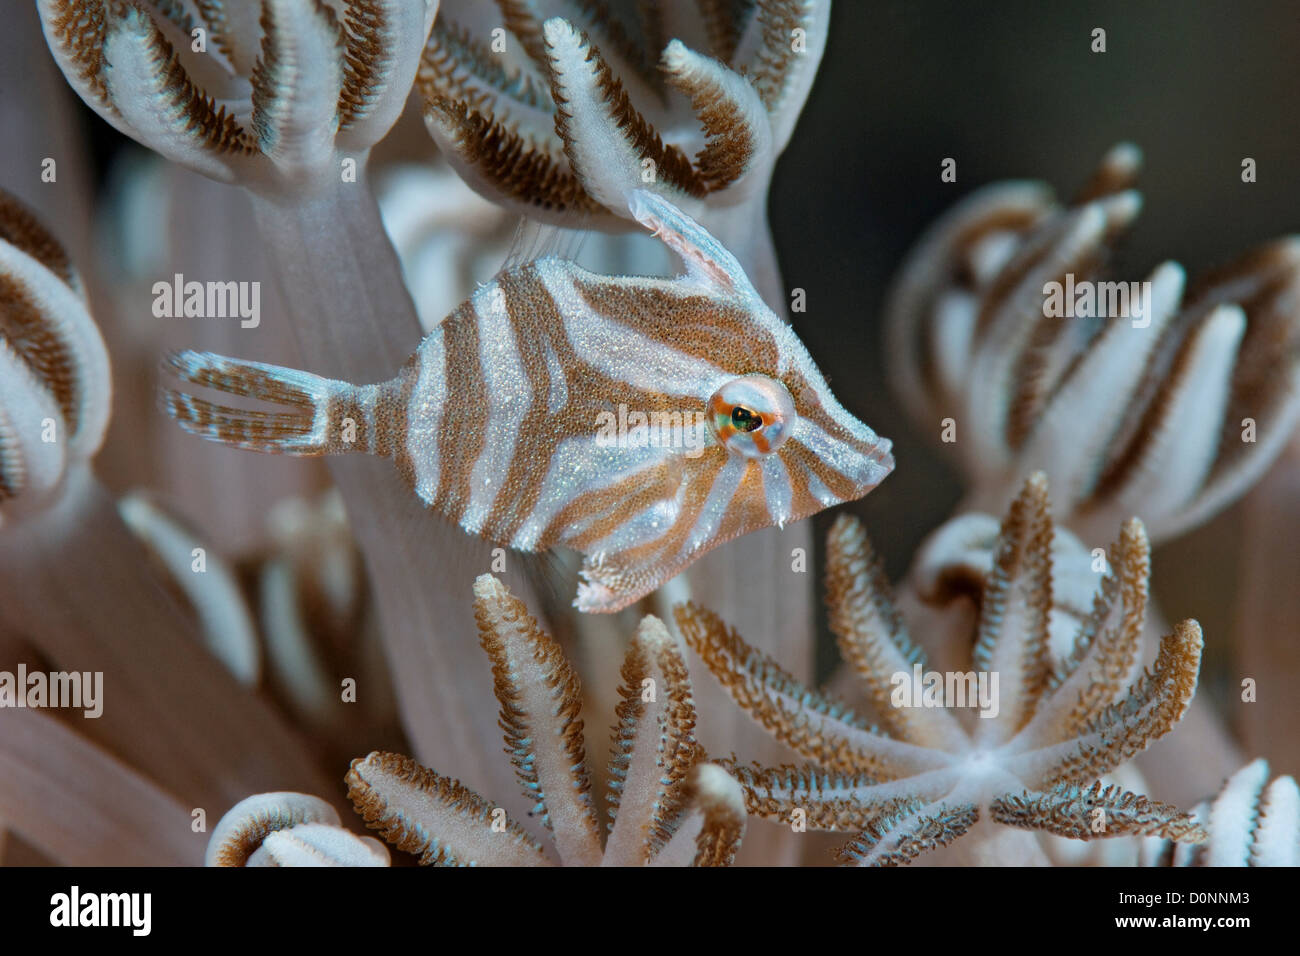 Les fleurs, des balistes Acreichthys radiatus, Manado, Sulawesi, Indonésie. Banque D'Images